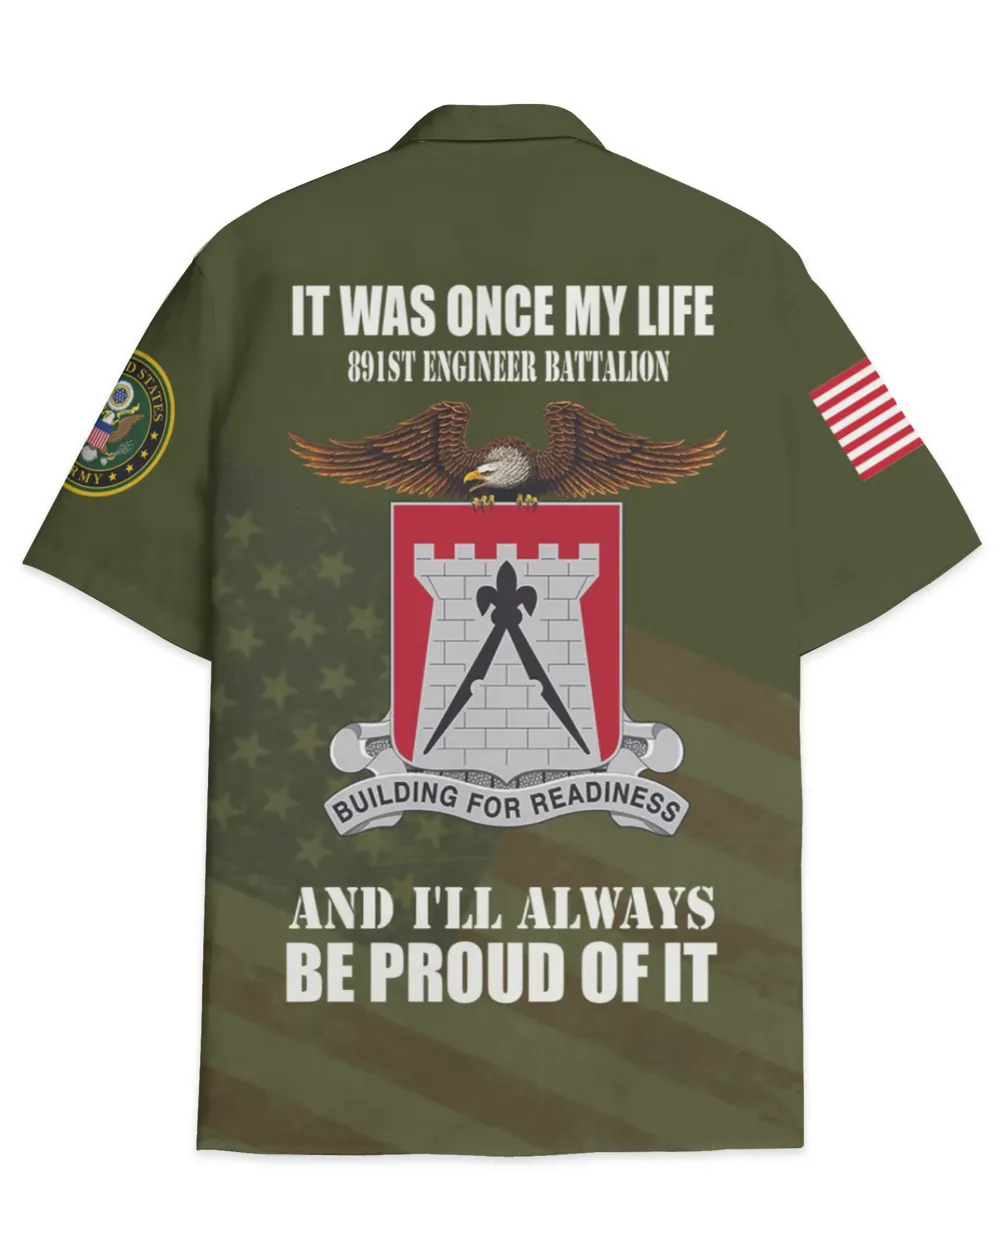 891st Engineer Battalion Hawaiian Shirt